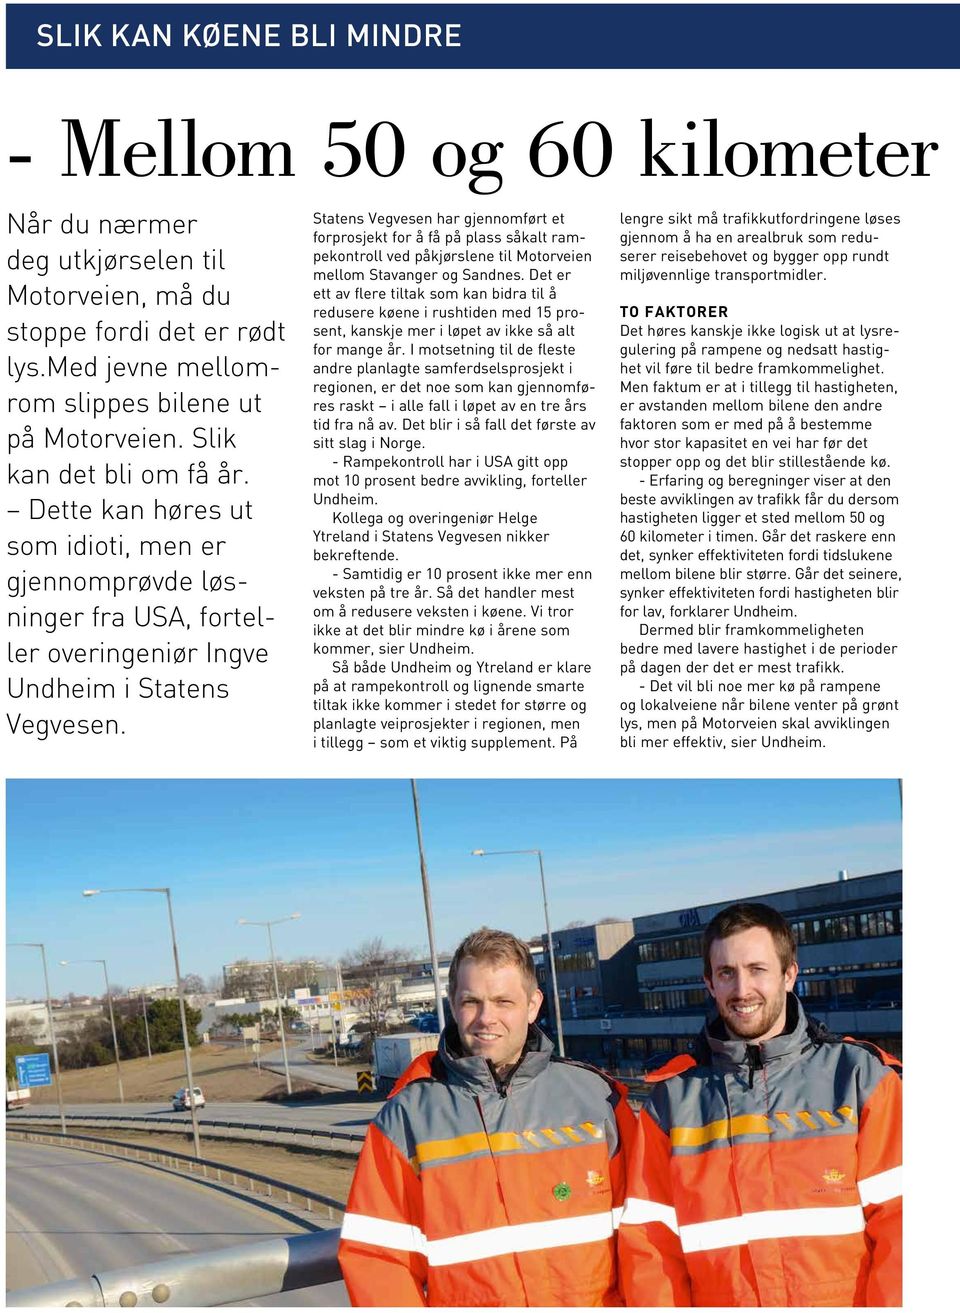 Statens Vegvesen har gjennomført et forprosjekt for å få på plass såkalt rampekontroll ved påkjørslene til Motorveien mellom Stavanger og Sandnes.